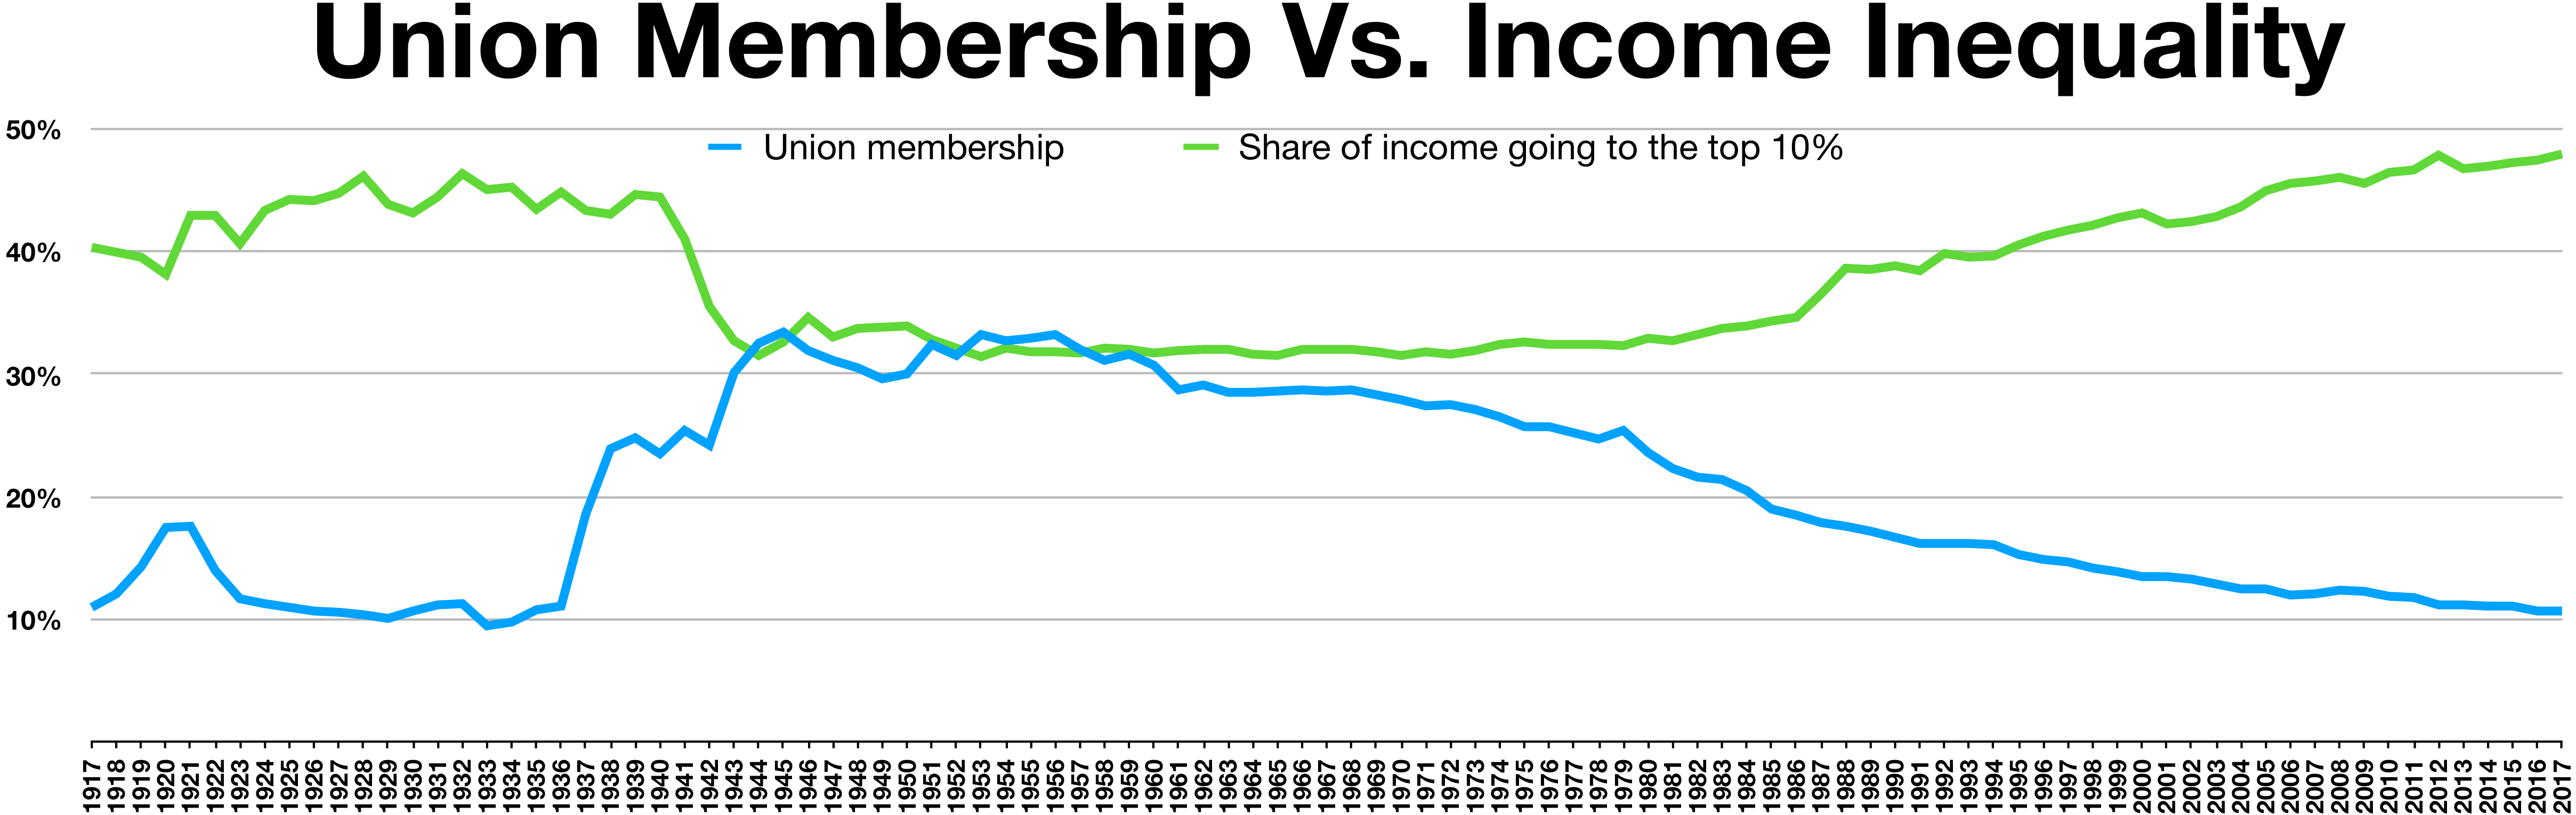 Gewerkschaftsmitgliedschaften und Ungleichverteilung des Einkommens